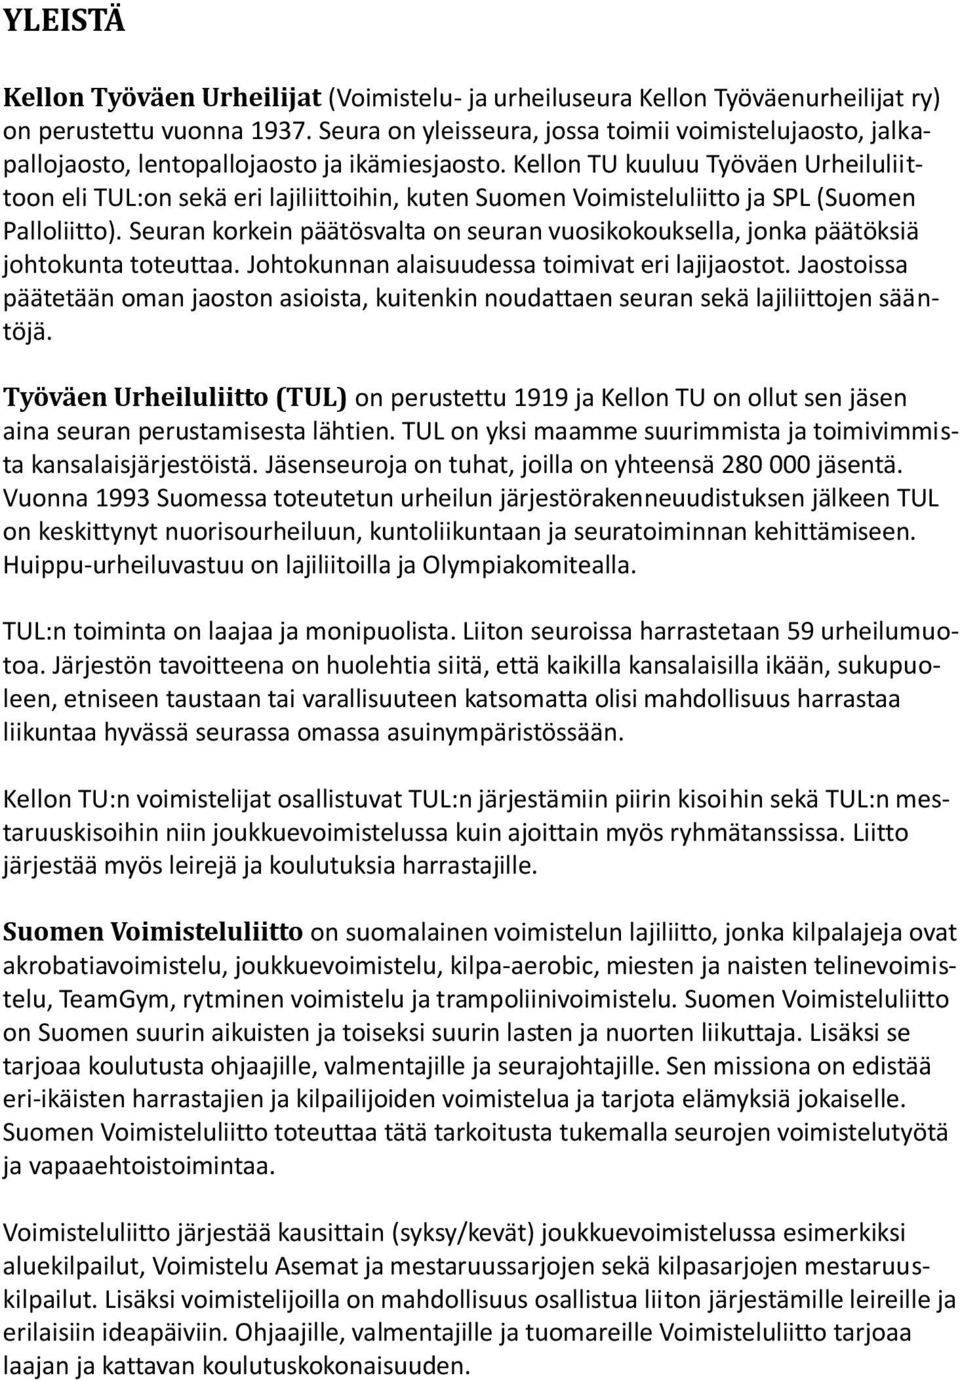 Kellon TU kuuluu Työväen Urheiluliittoon eli TUL:on sekä eri lajiliittoihin, kuten Suomen Voimisteluliitto ja SPL (Suomen Palloliitto).